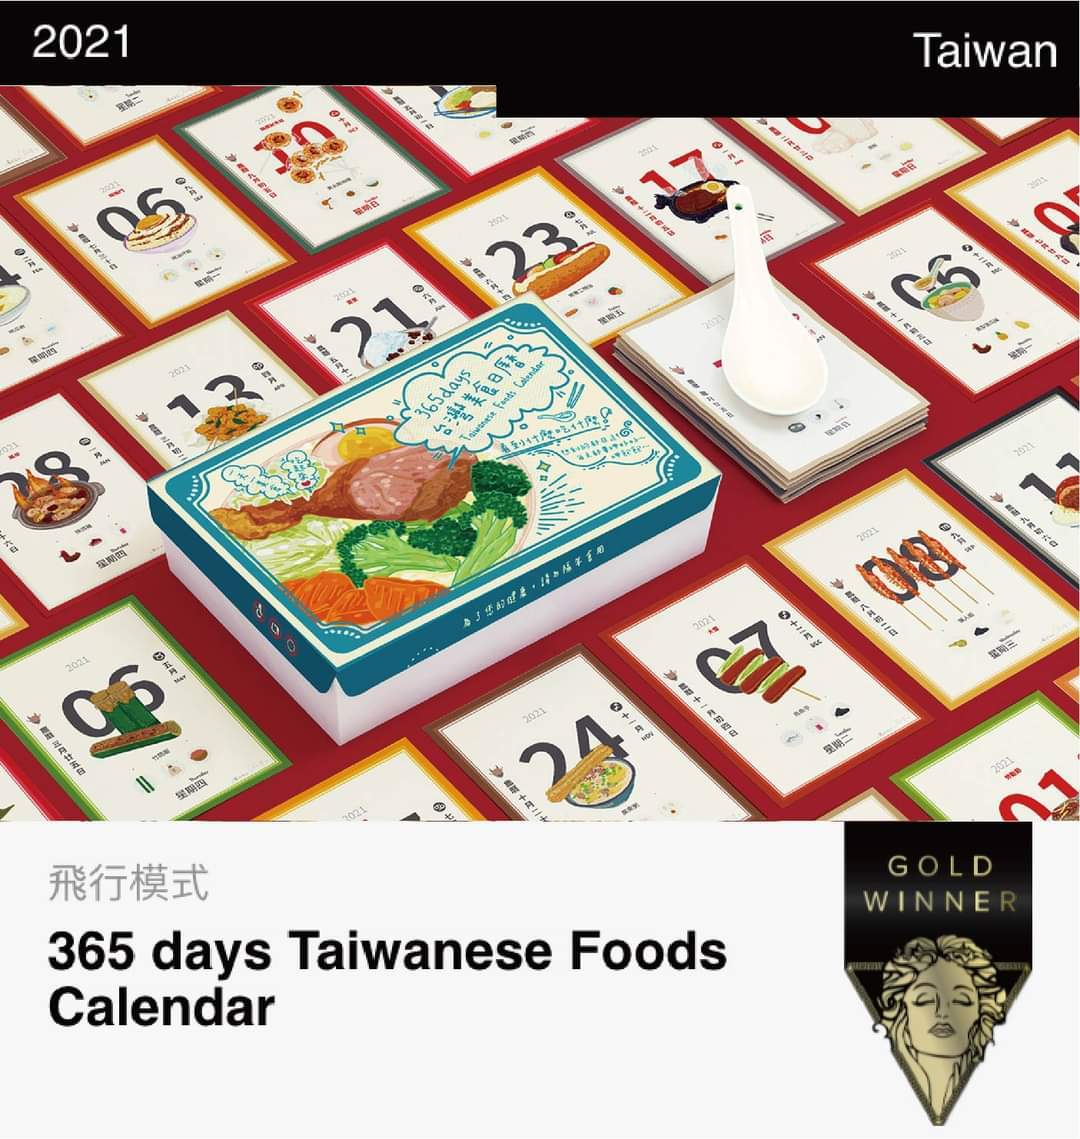 亞大設計學院數媒系博士生陳郭益言與通識中心老師湯筱婷，設計的「365days台灣美食日曆」，獲美國「繆思創意」金獎。